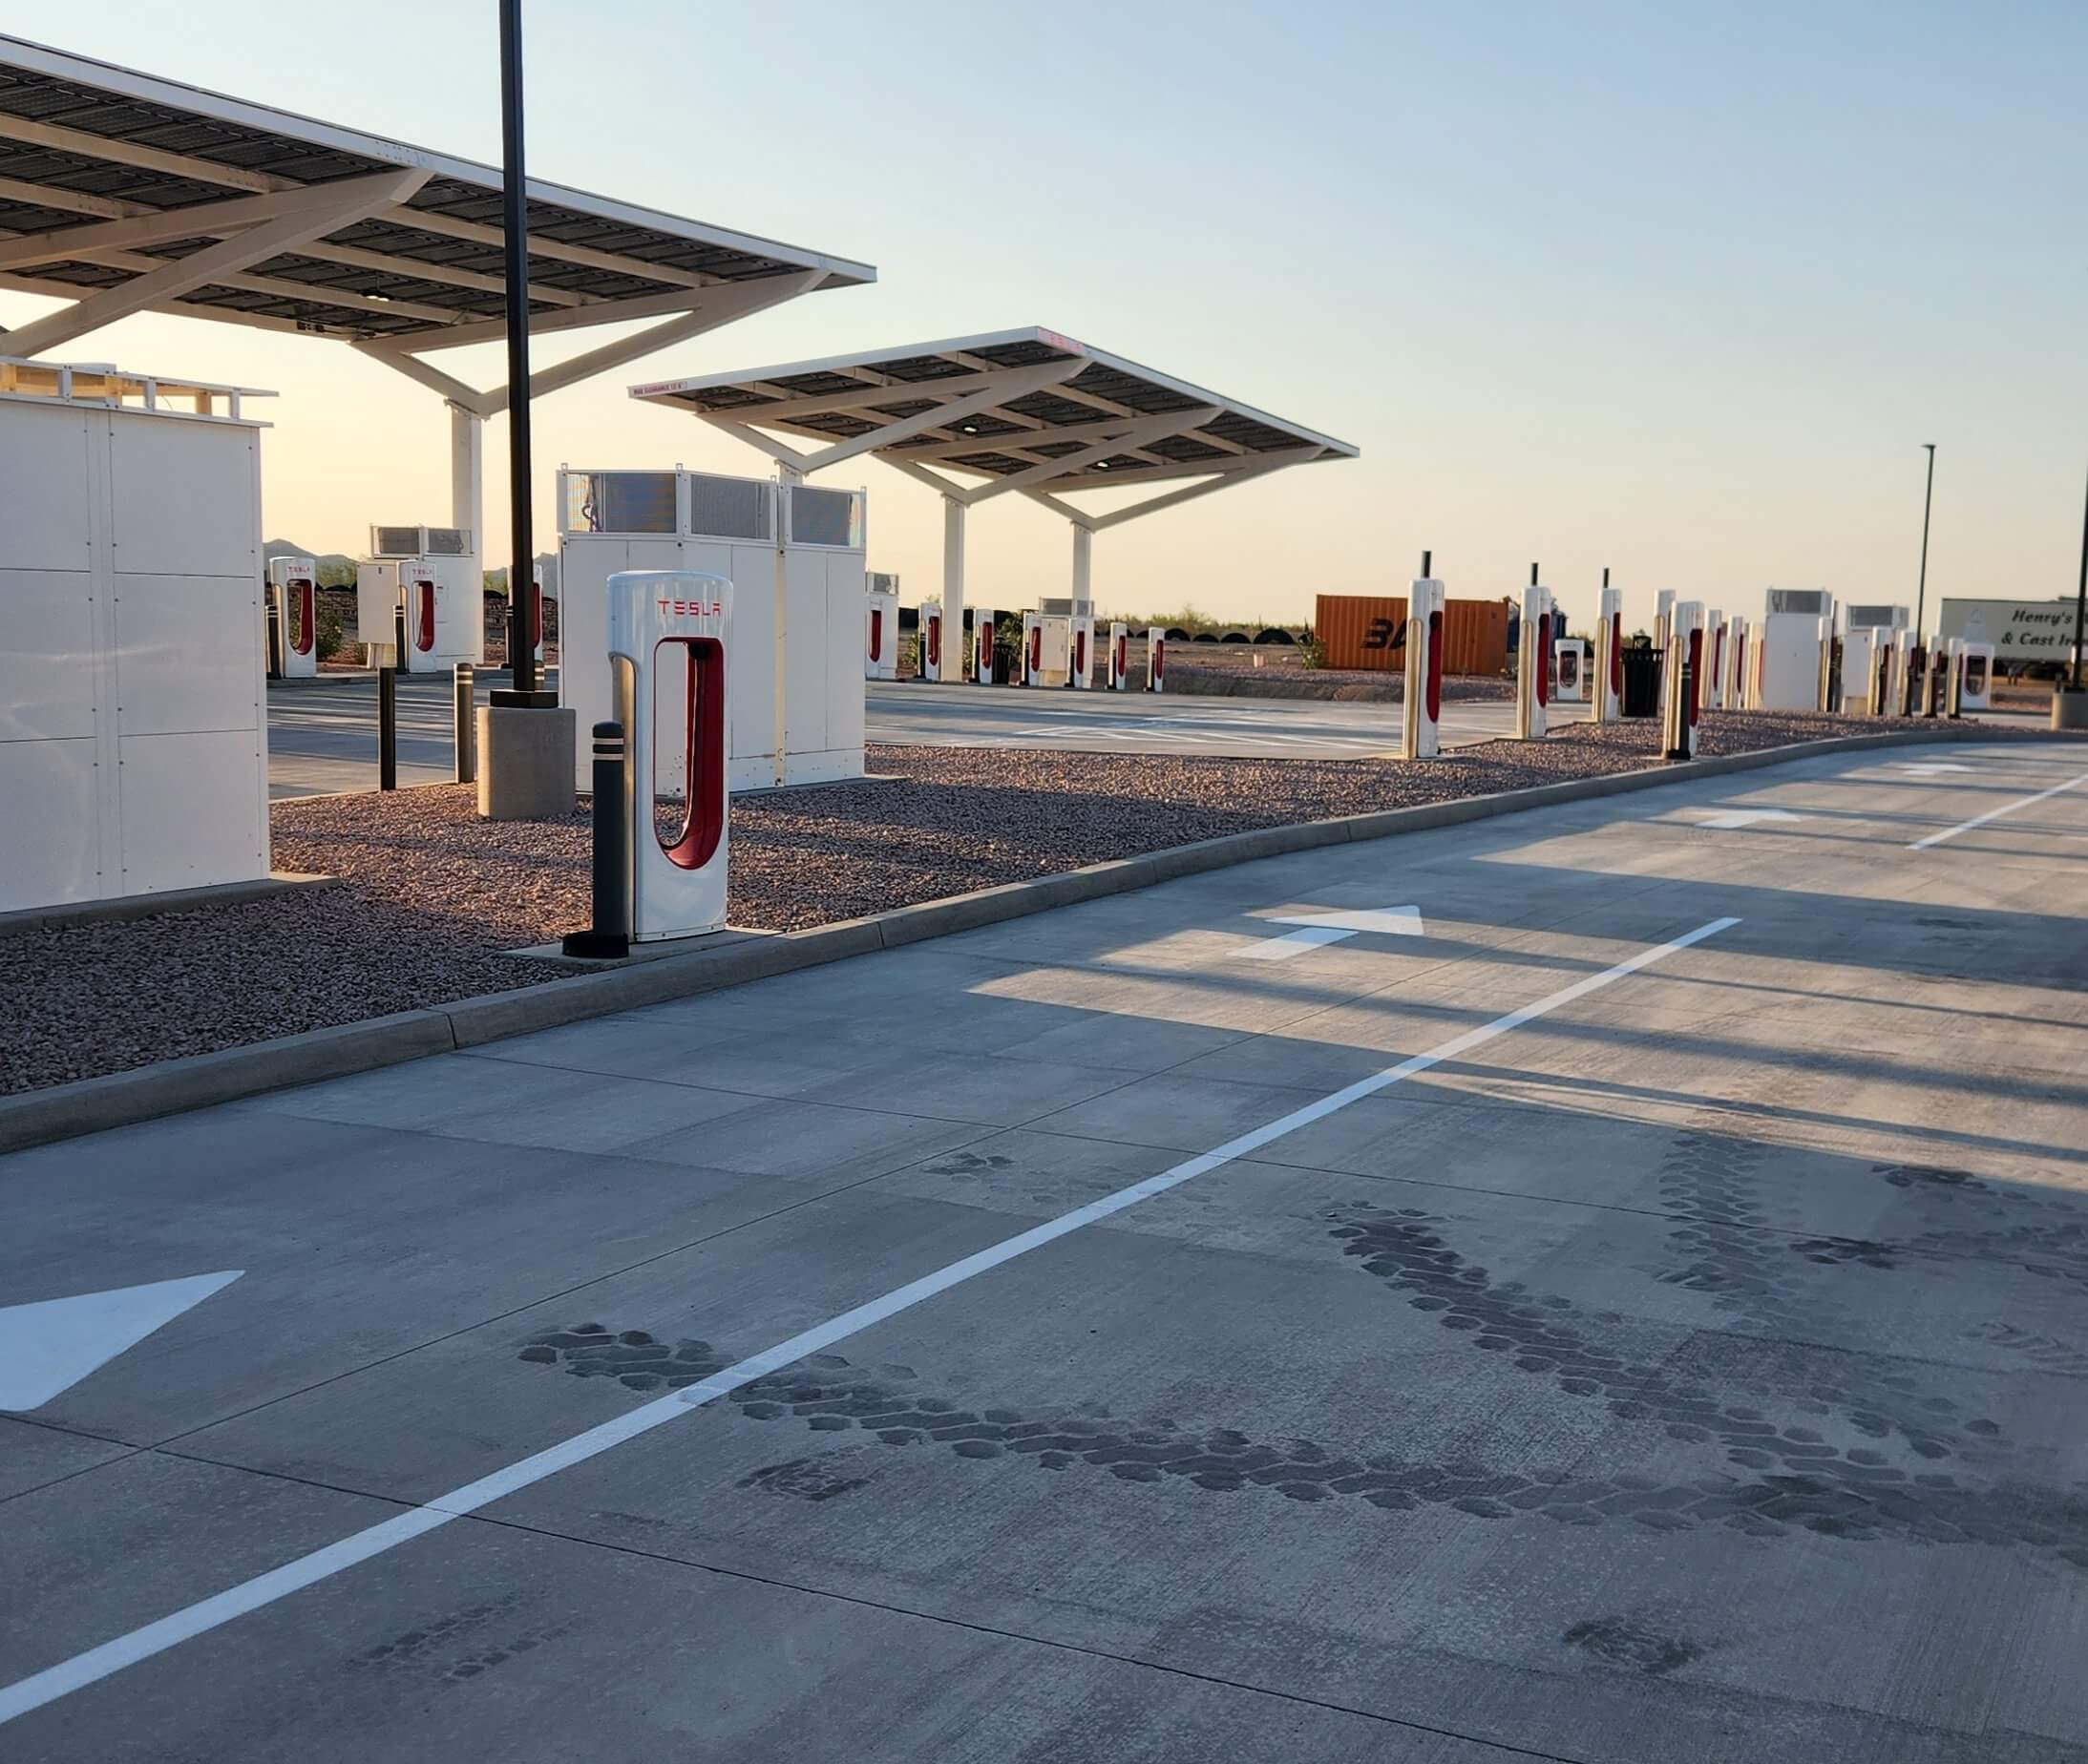 De nieuwe Tesla Supercharger is voorzien van doortreklaadstations